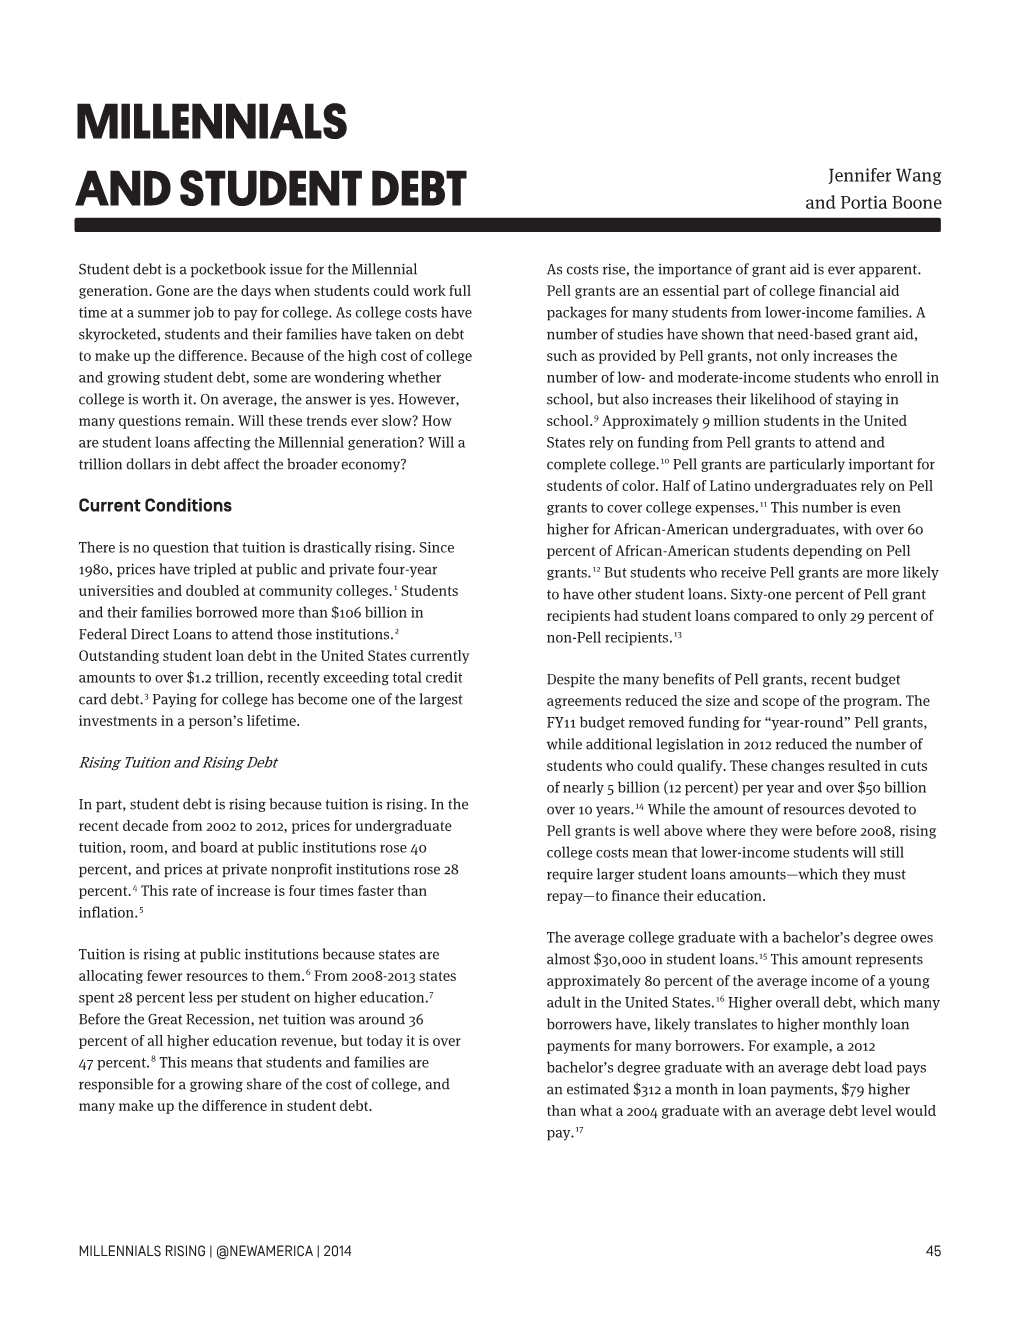 Millennials and Student Debt